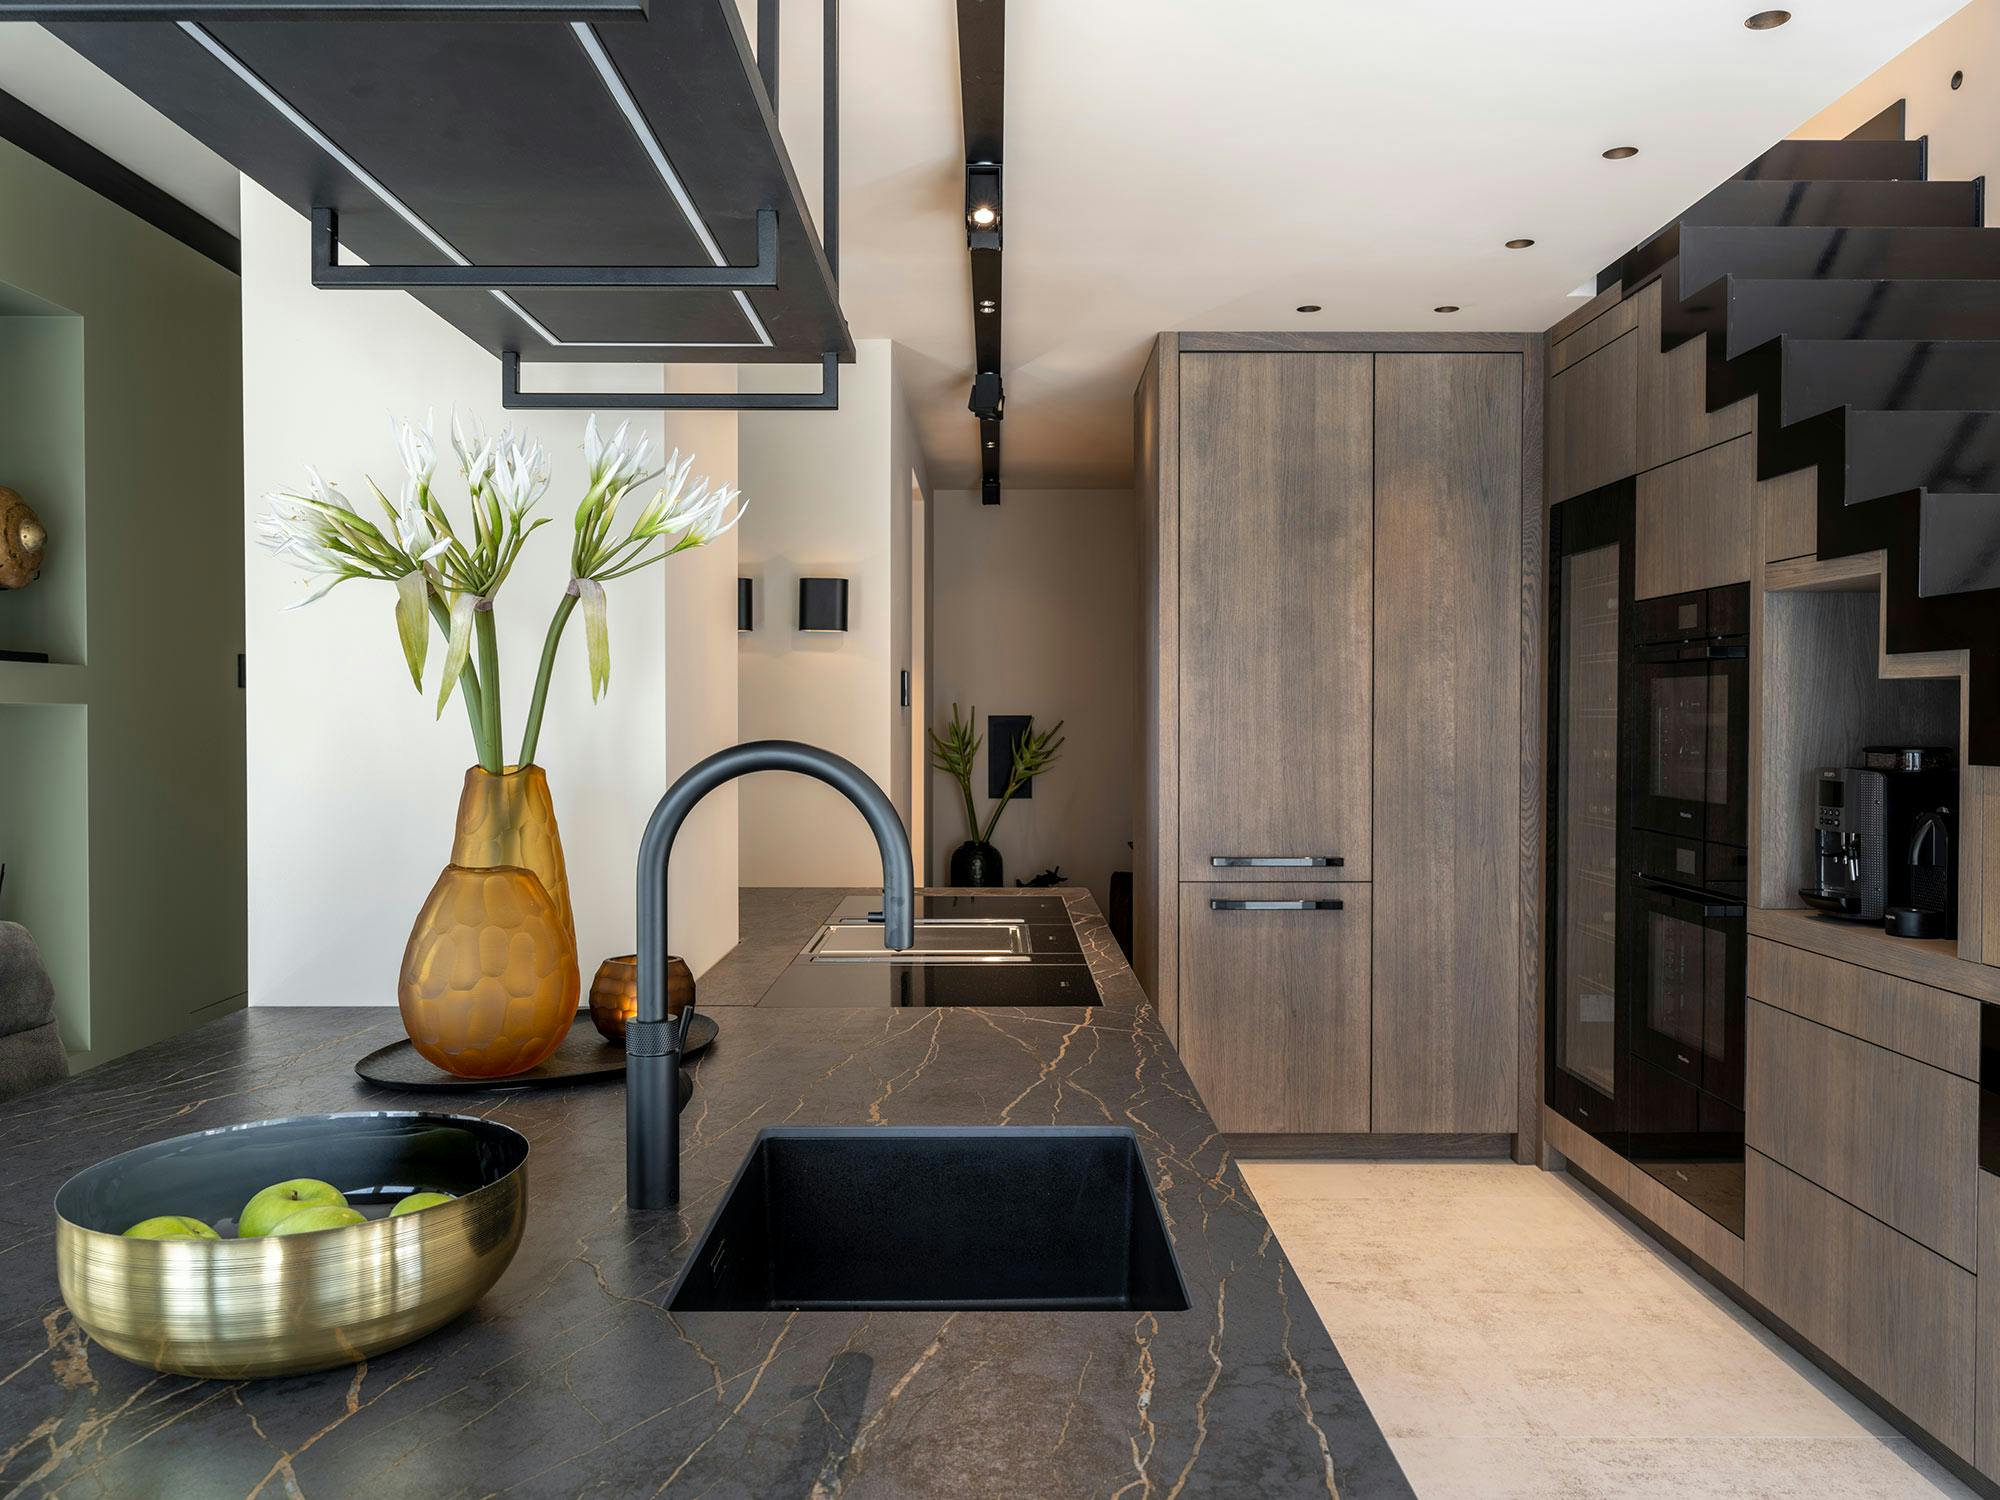 Bildnummer 46 des aktuellen Abschnitts von High-end homes with a modern design and durable materials von Cosentino Deutschland